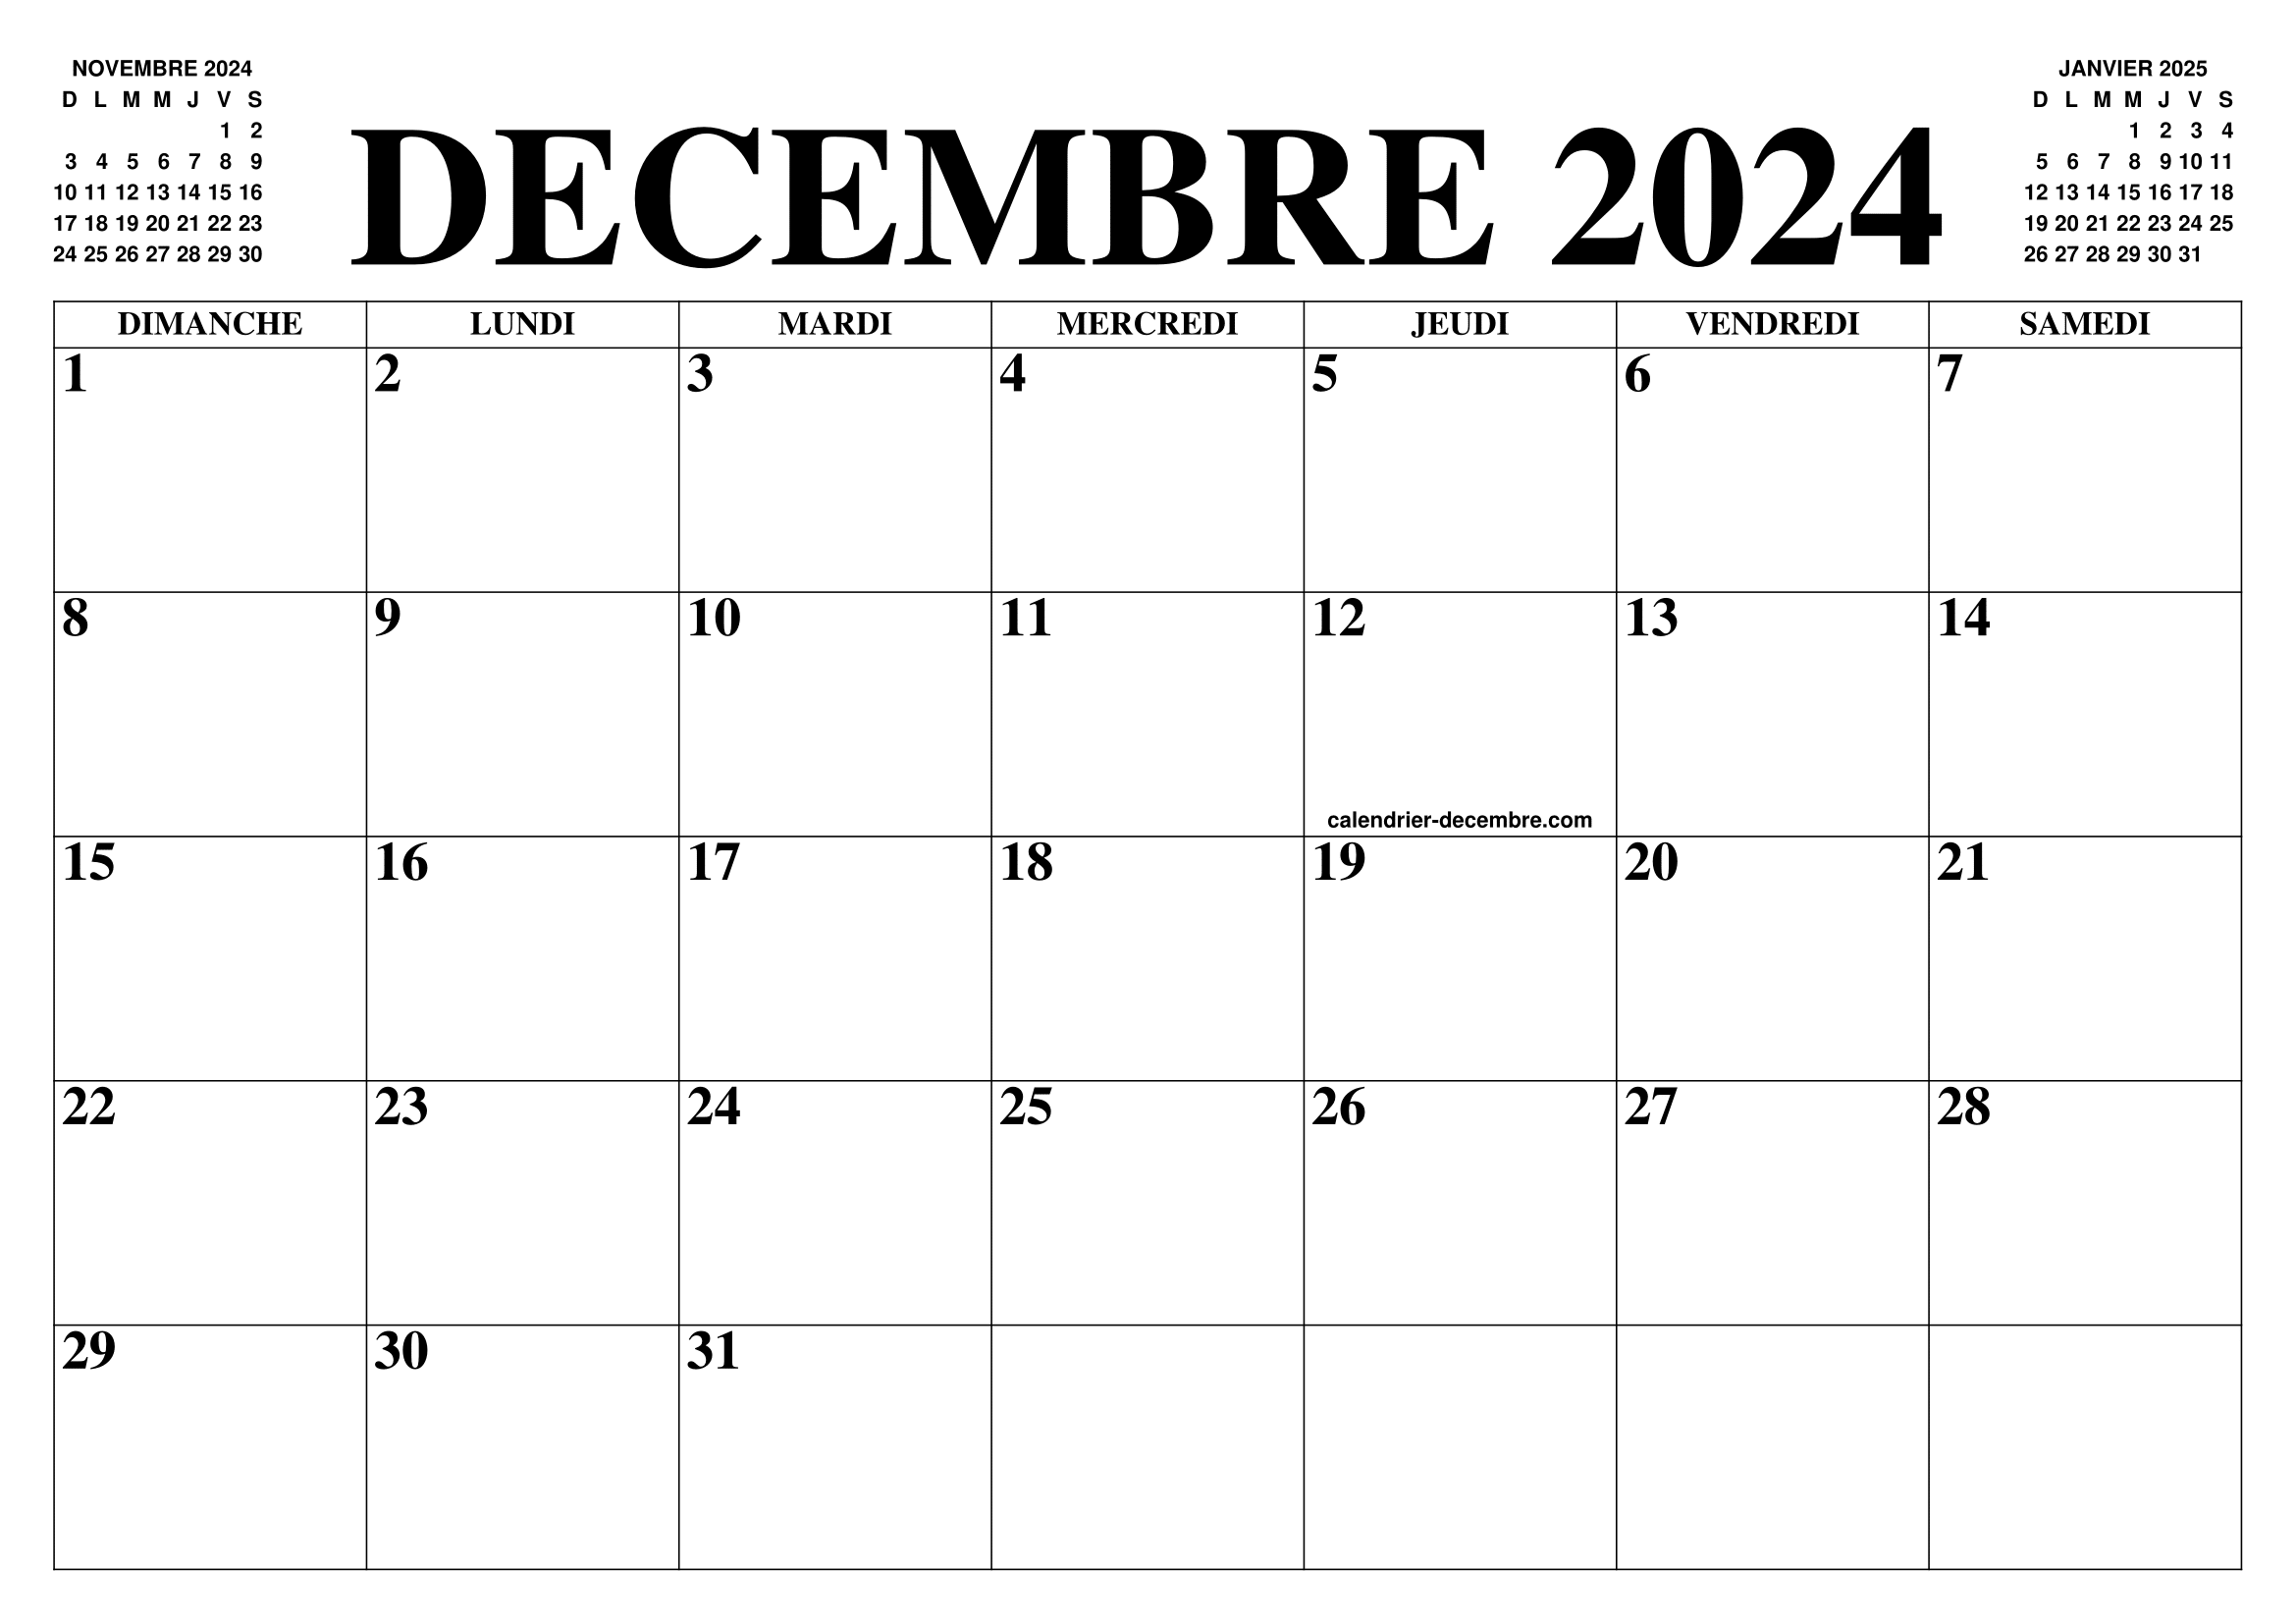 CALENDRIER DECEMBRE 2024 : LE CALENDRIER DU MOIS DE DECEMBRE 2024 GRATUIT A  IMPRIMER - AGENDA